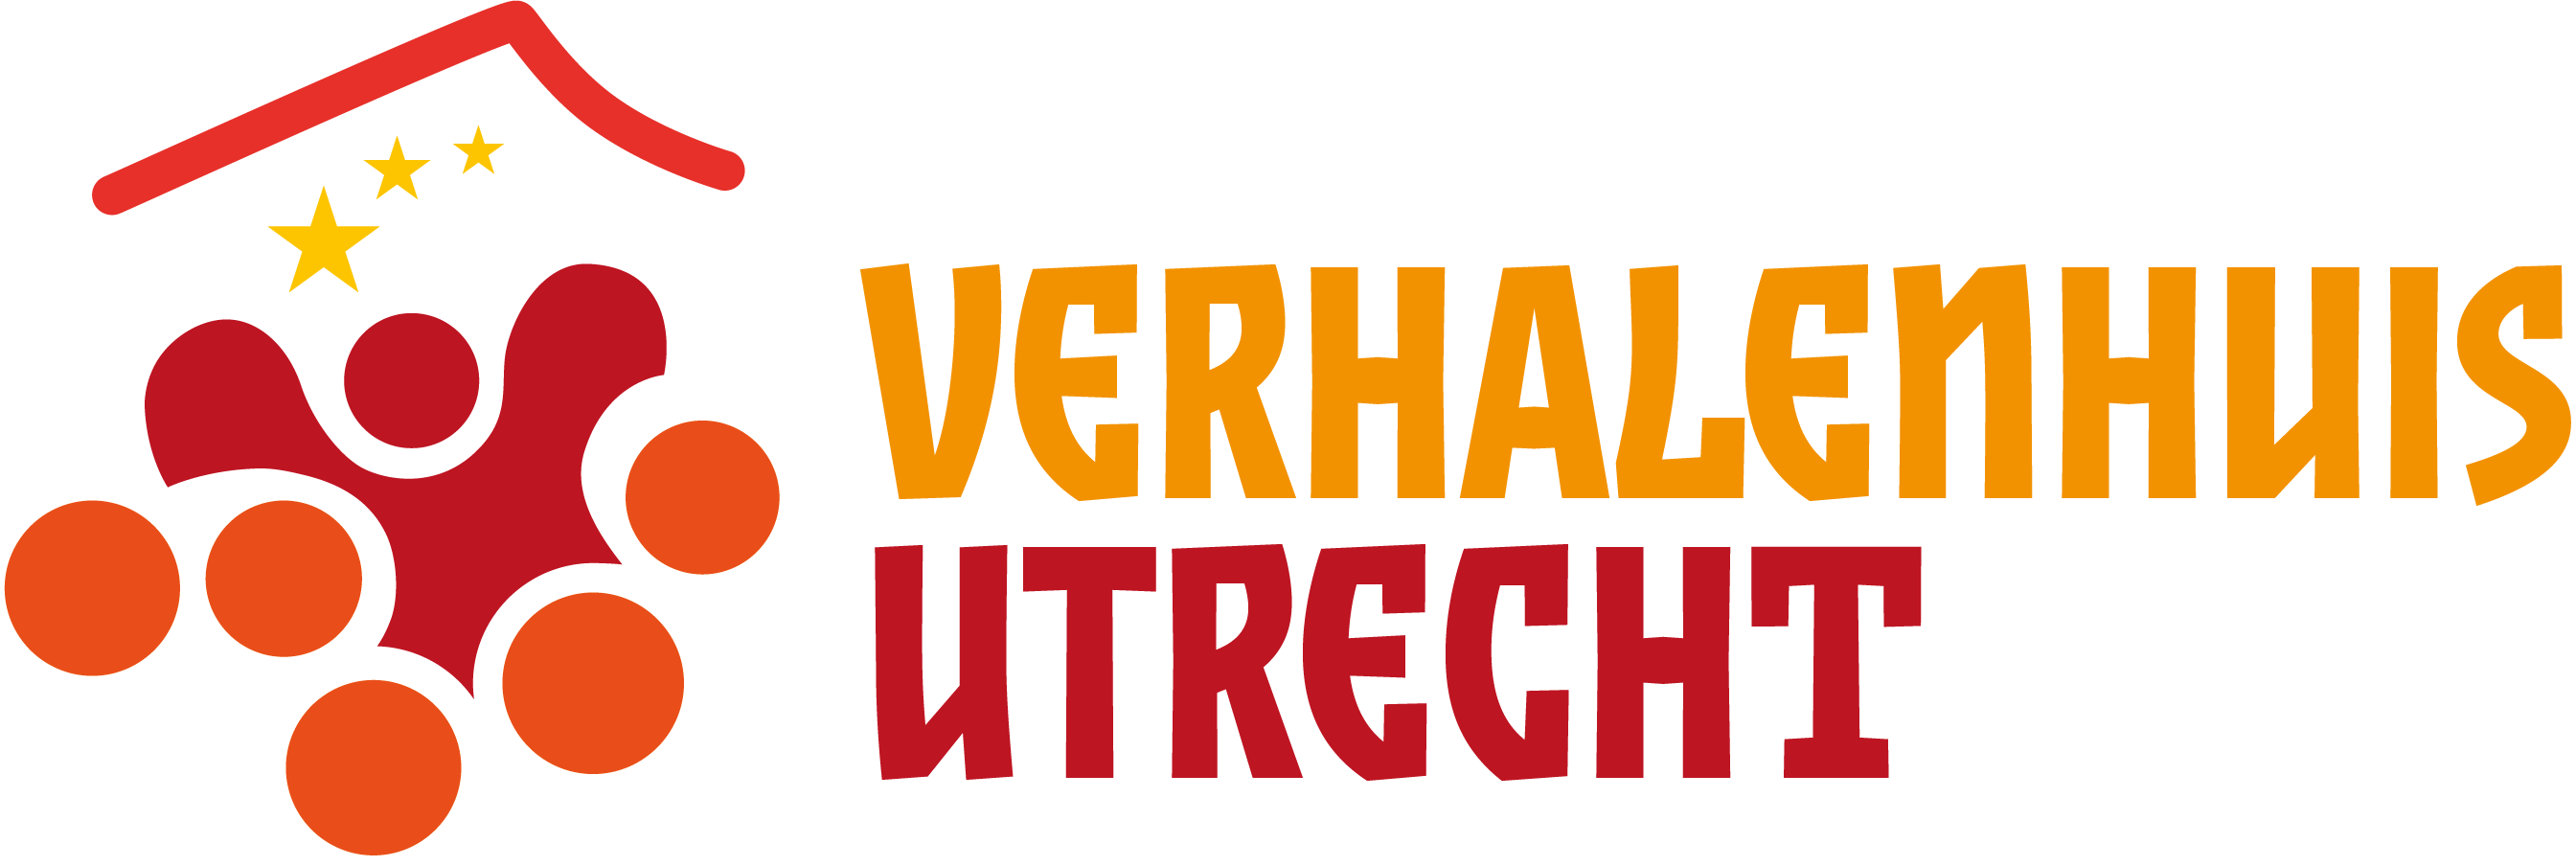 27 oktober: Verhalentafel van Verhalenhuis Utrecht